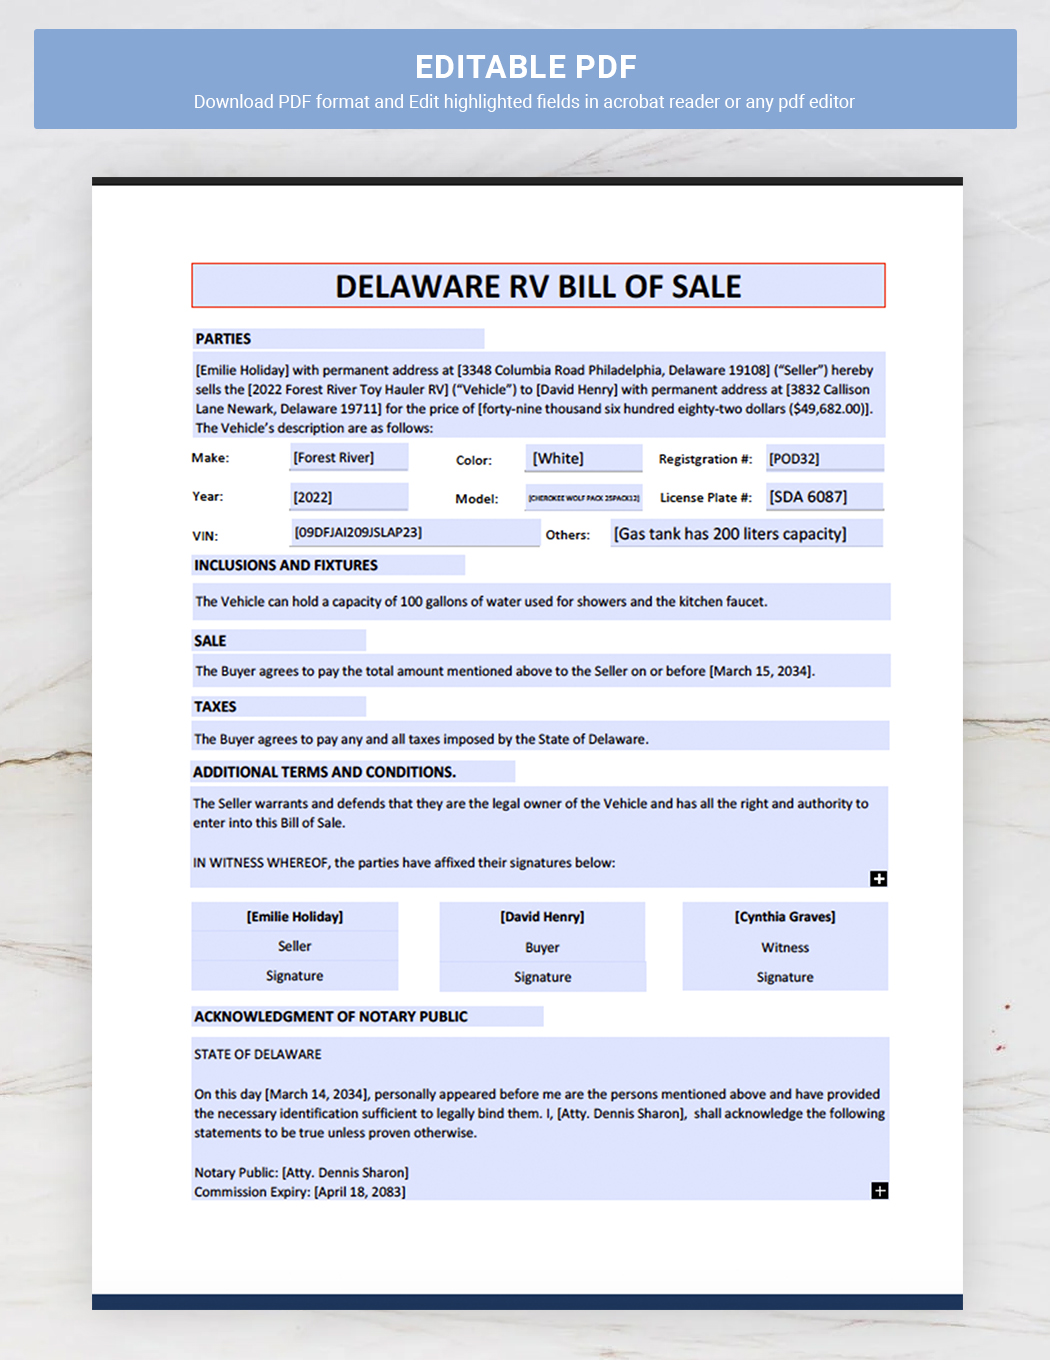 Delaware RV Bill of Sale Template